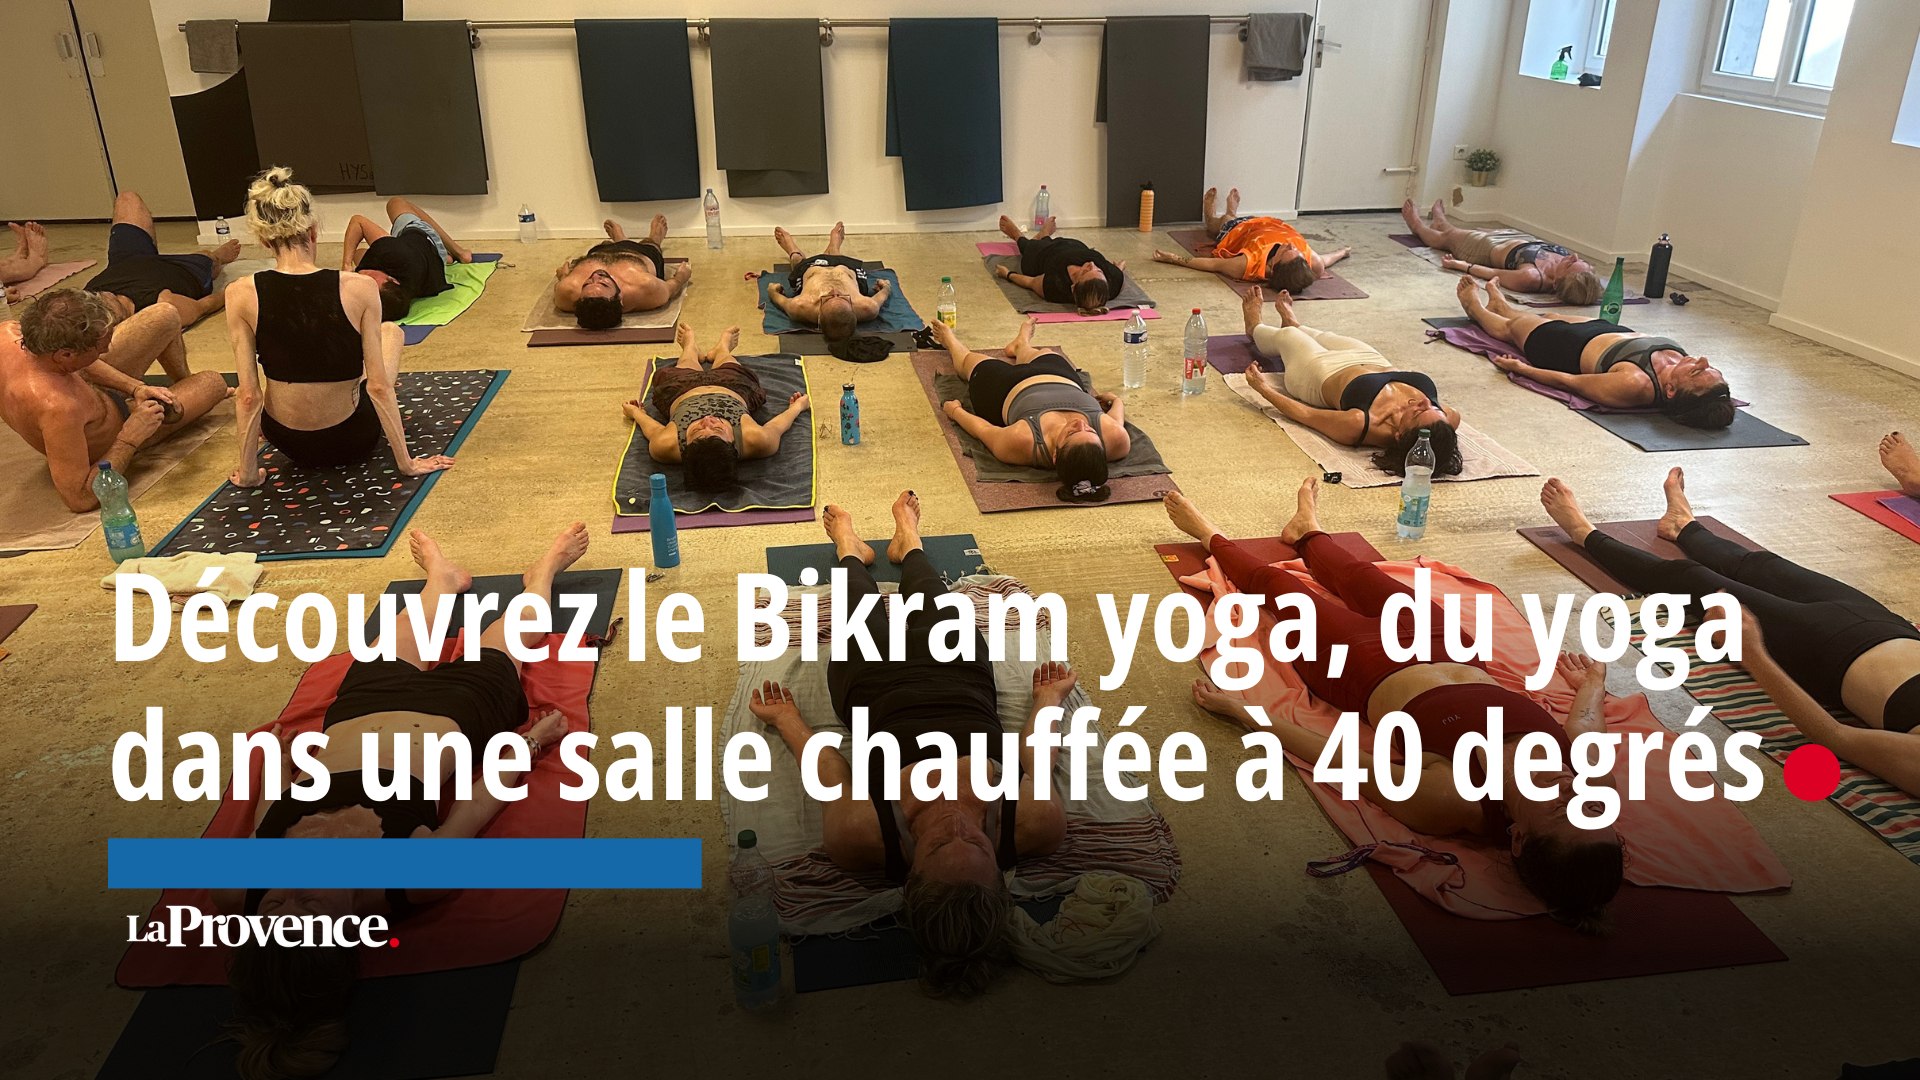 On a testé pour vous le Bikram yoga, du yoga dans une salle chauffée à 40  degrés - Vidéo Dailymotion